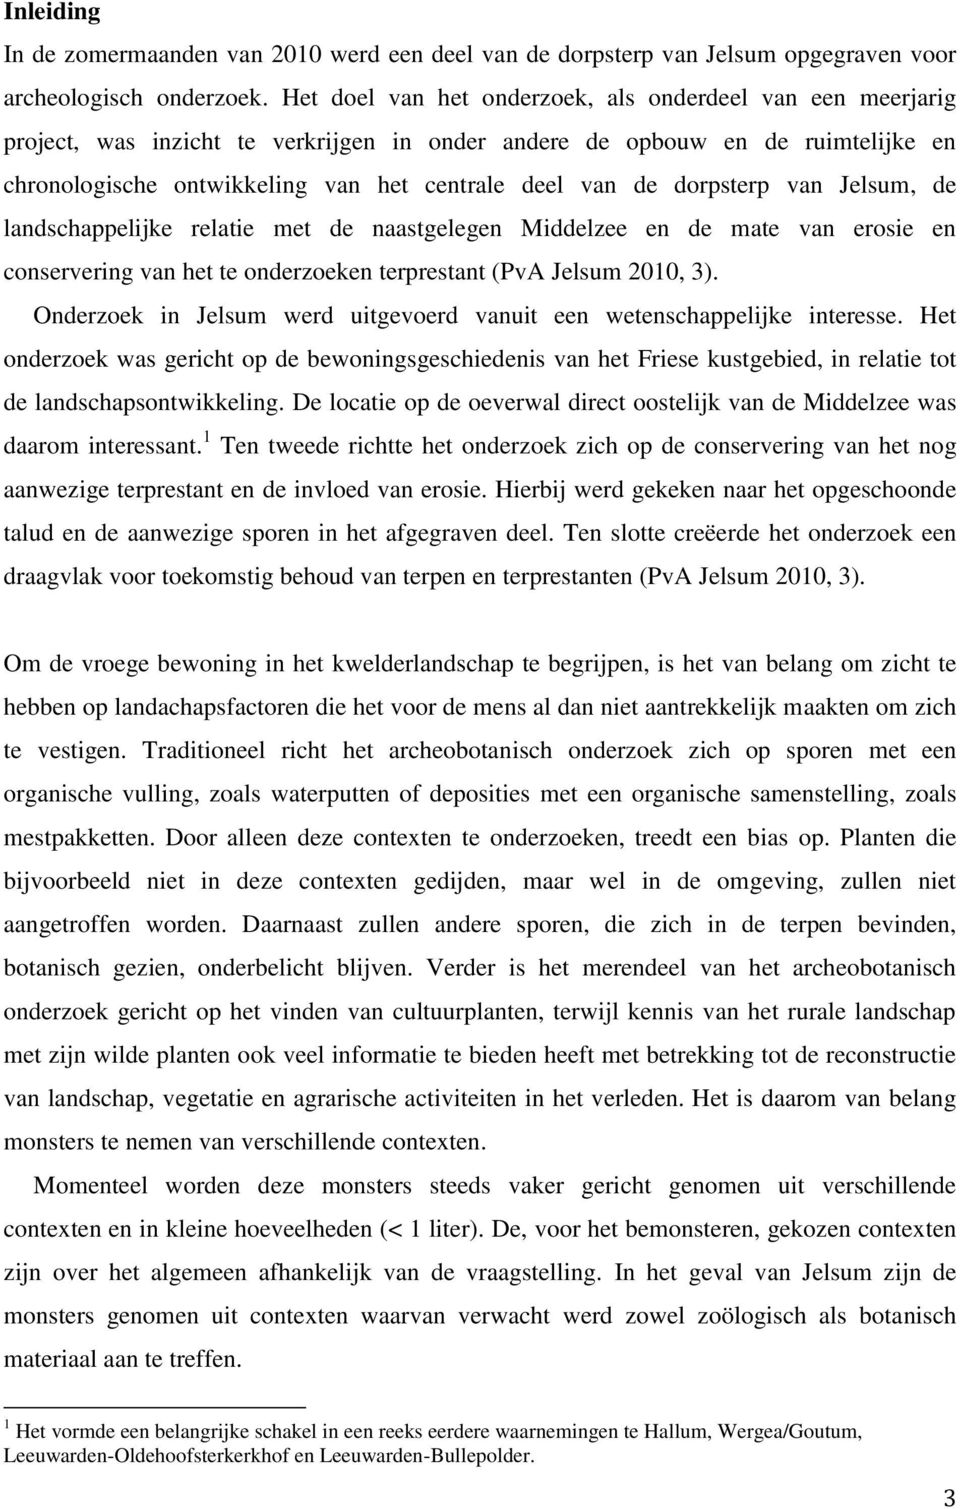 dorpsterp van Jelsum, de landschappelijke relatie met de naastgelegen Middelzee en de mate van erosie en conservering van het te onderzoeken terprestant (PvA Jelsum 2010, 3).